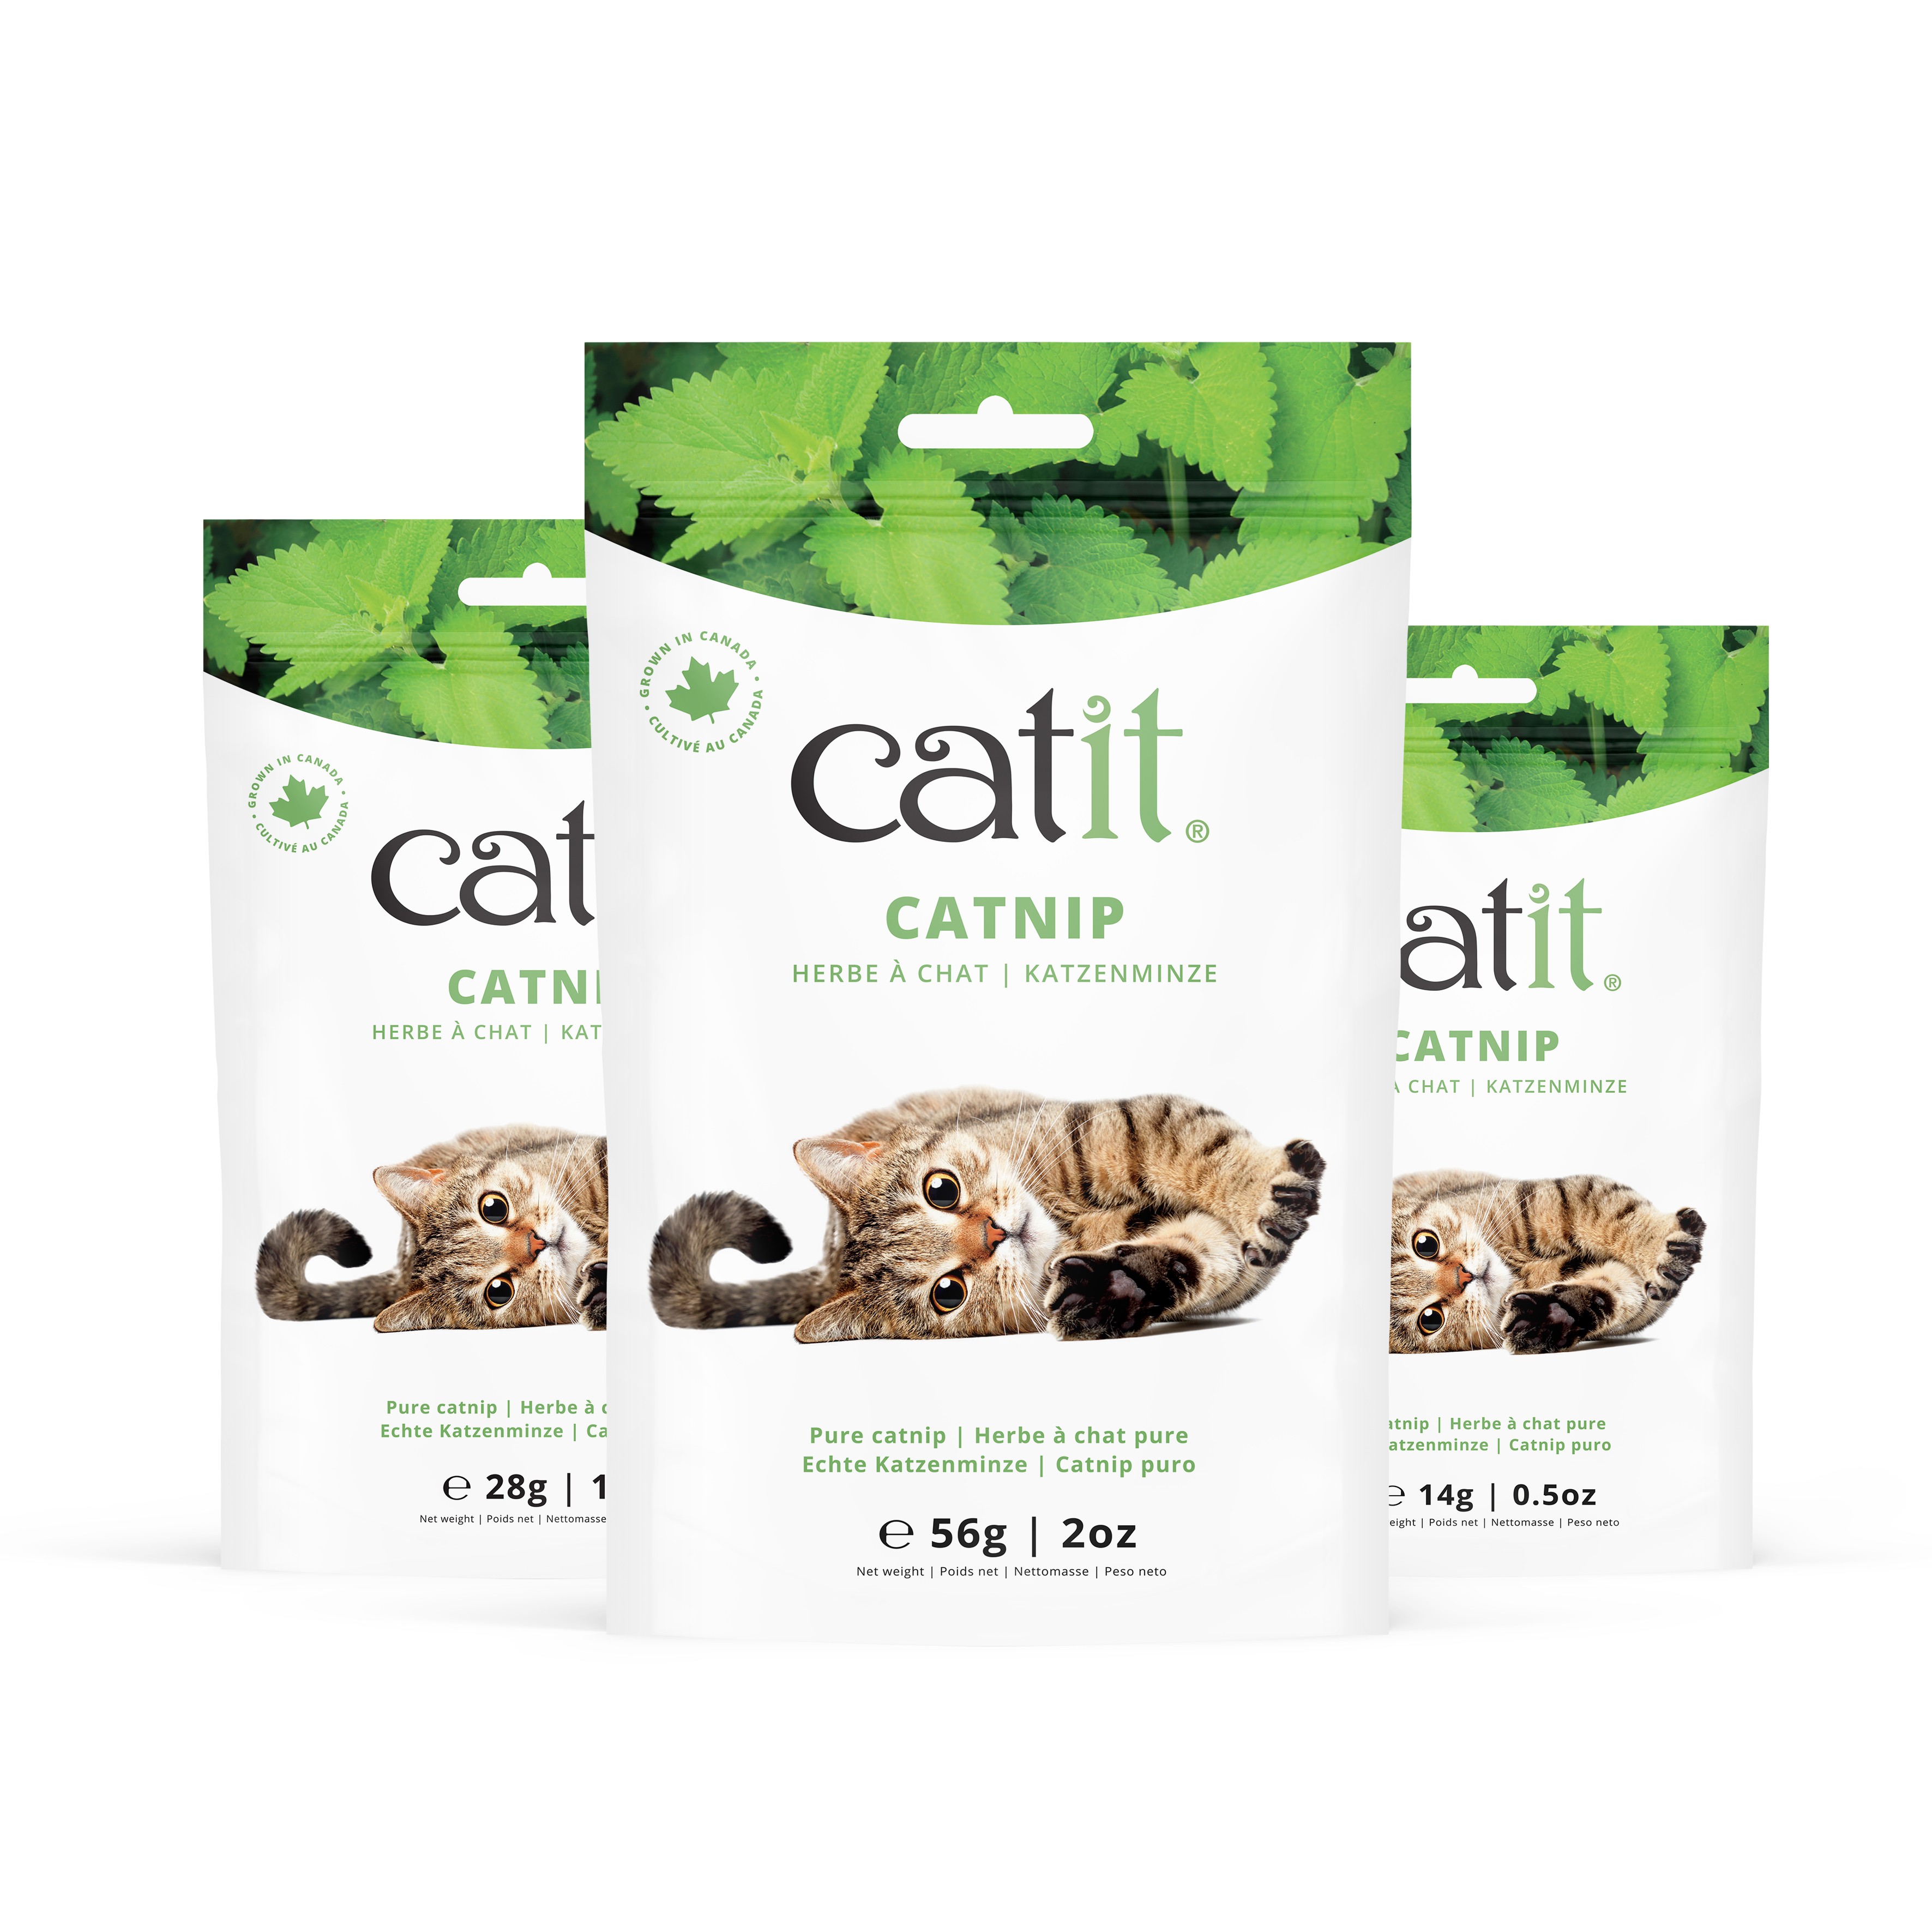 Catit bolsa de Catnip 14g para gatos